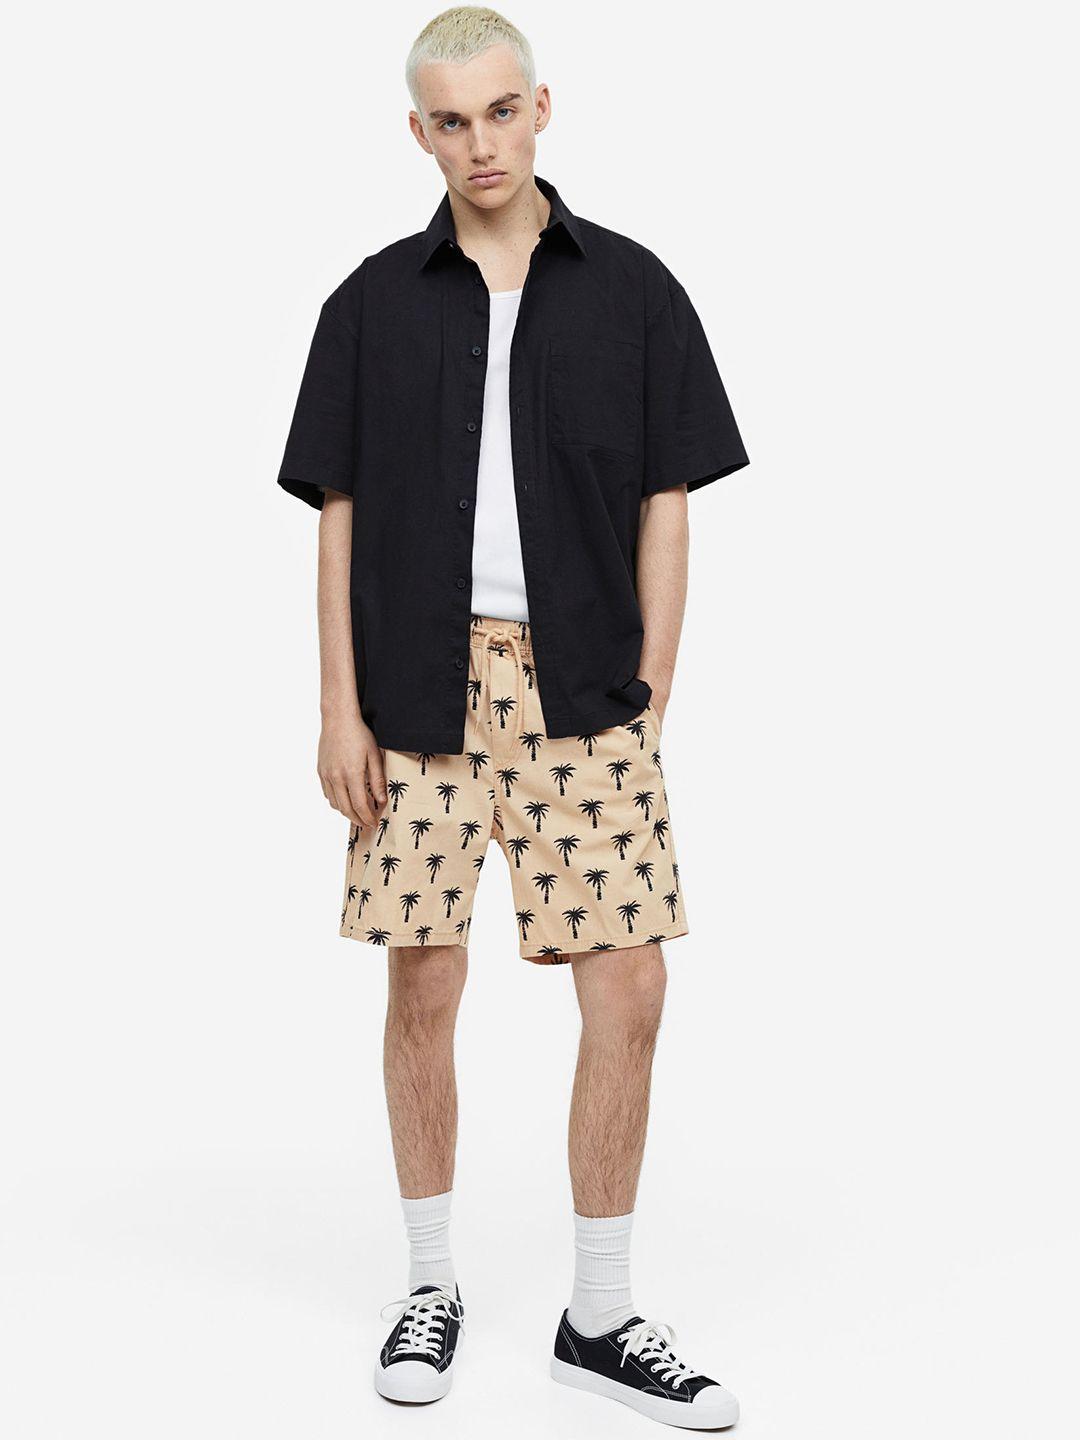 h&m men regular fit patterned shorts